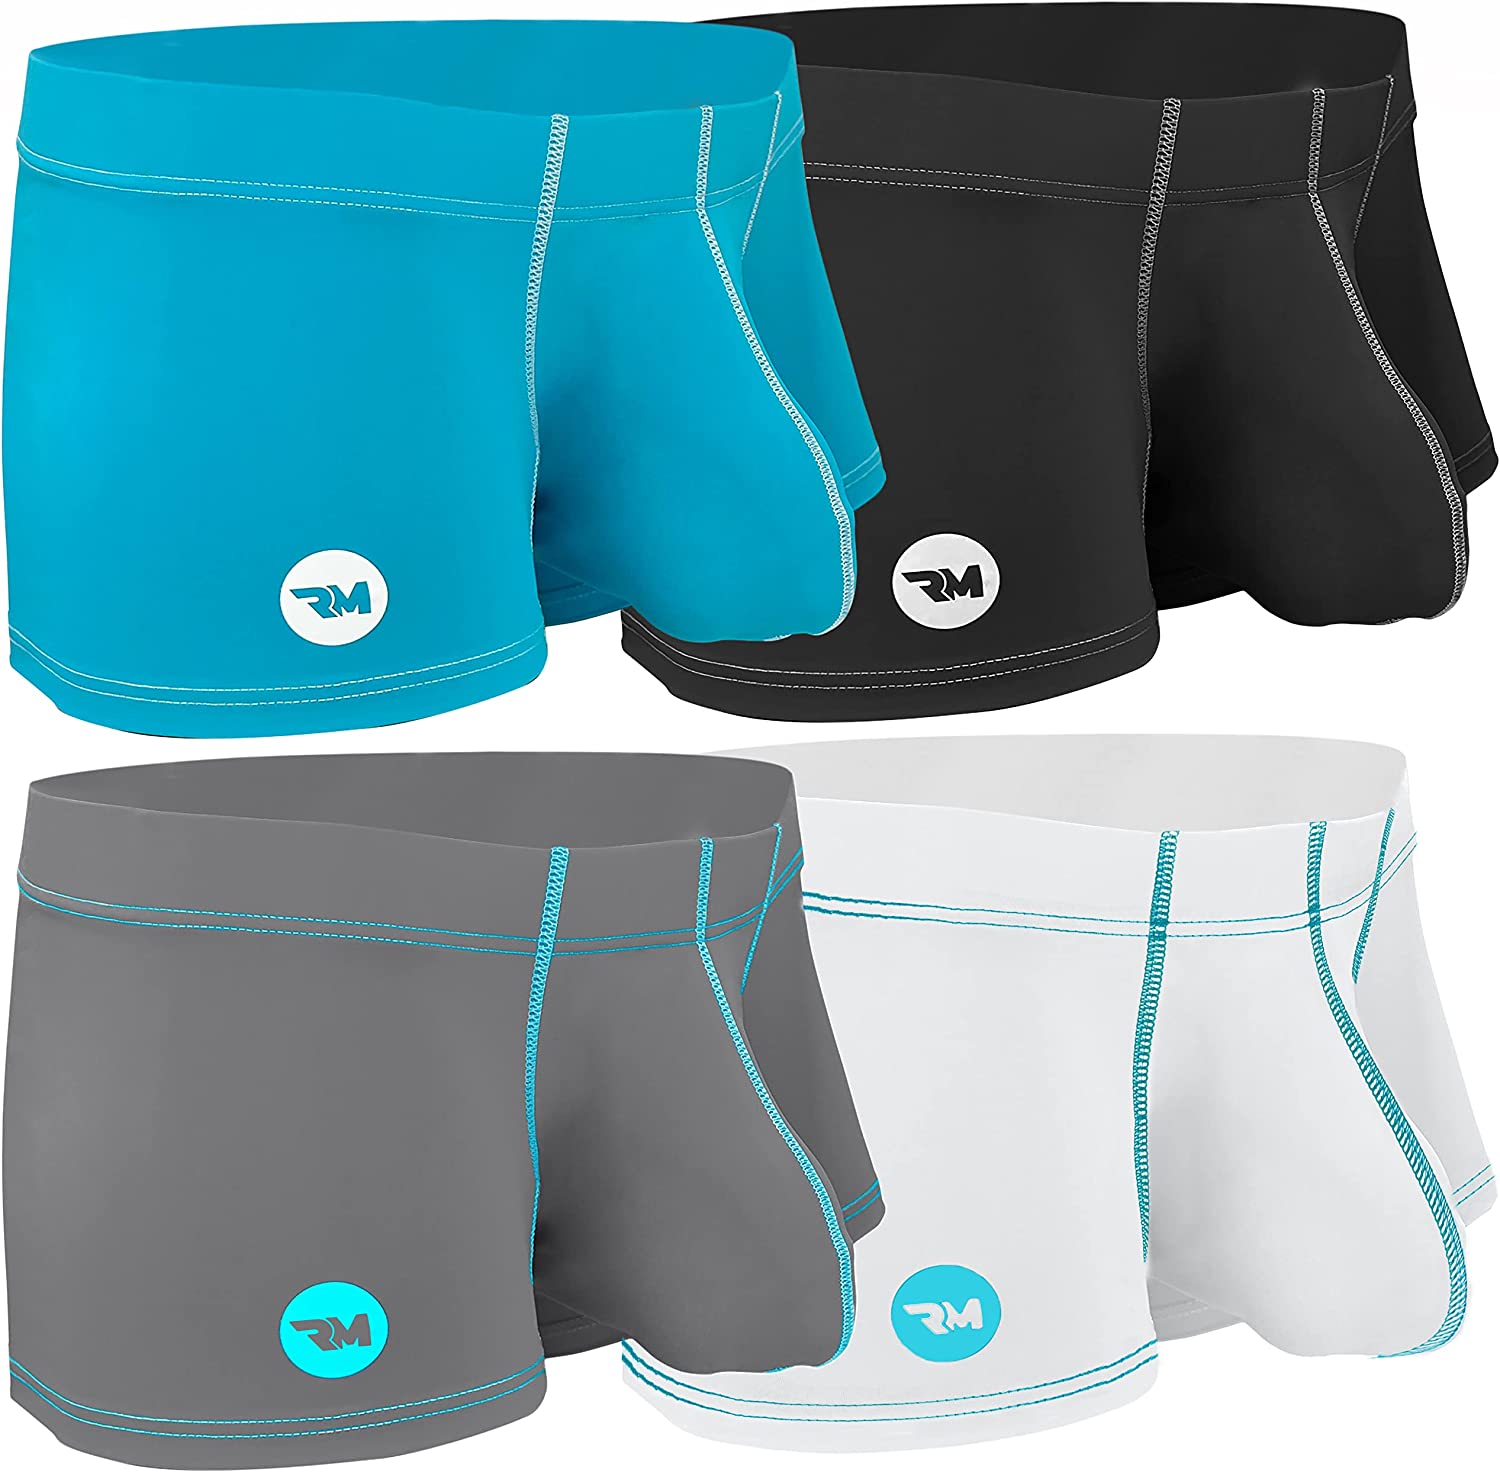 Aayomet Men Underwear Men's Enhancing Underwear Briefs Ice Silk Big Ball  Pouch Briefs for Male Pack,White XL 